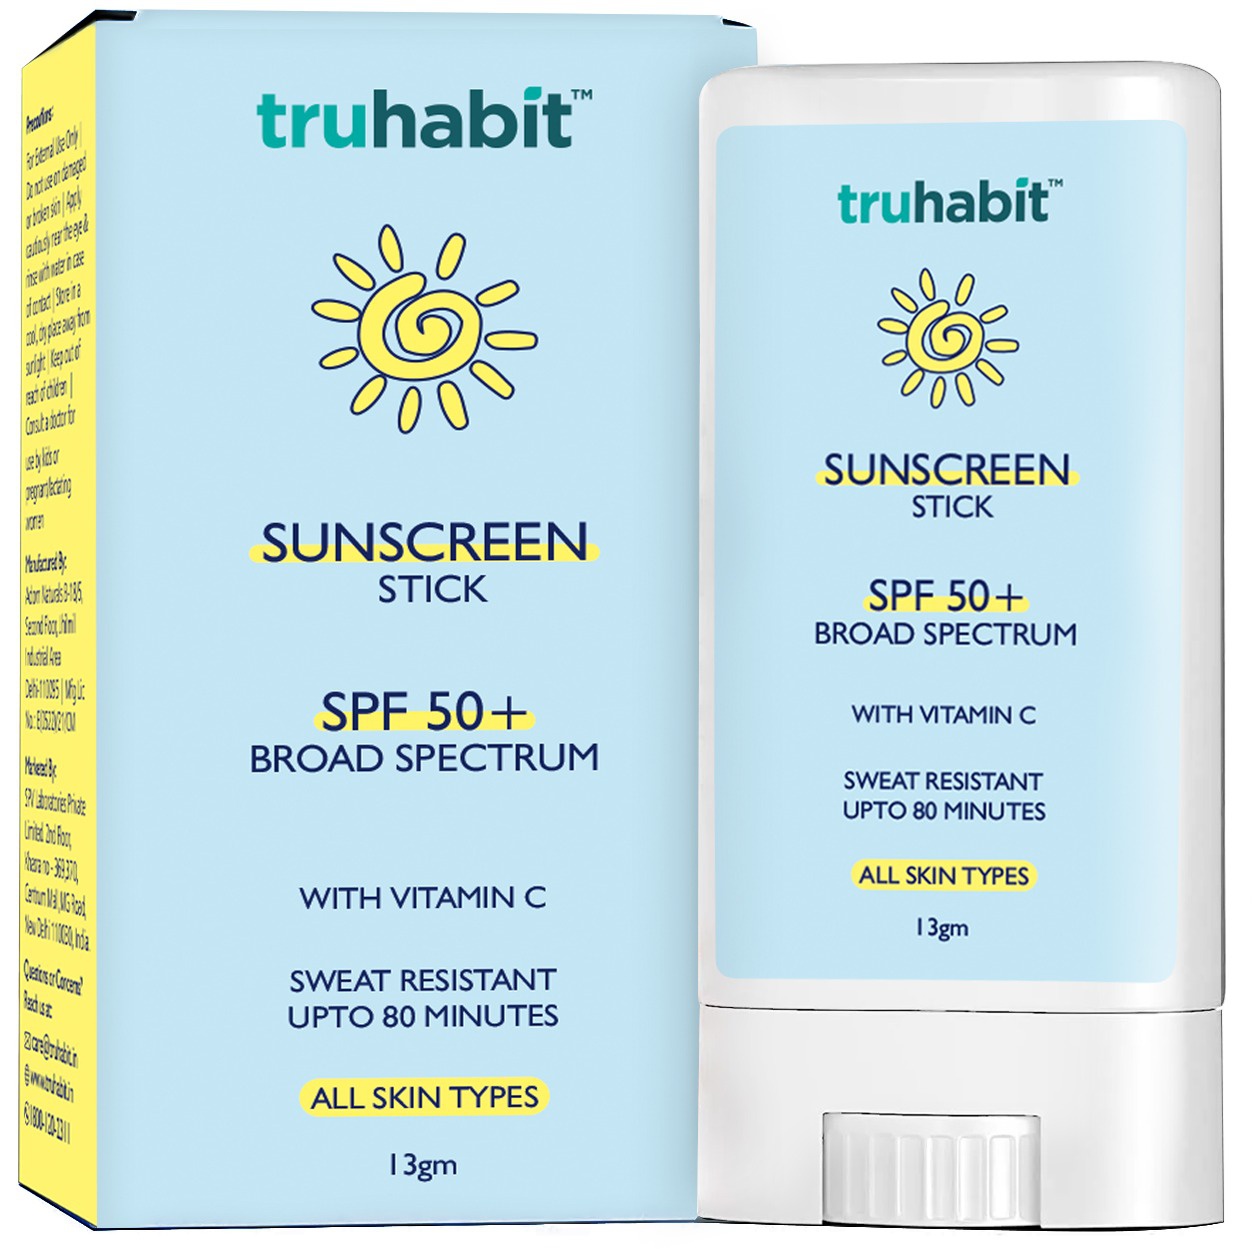 TruHabit Sunscreen Stick SPF 50